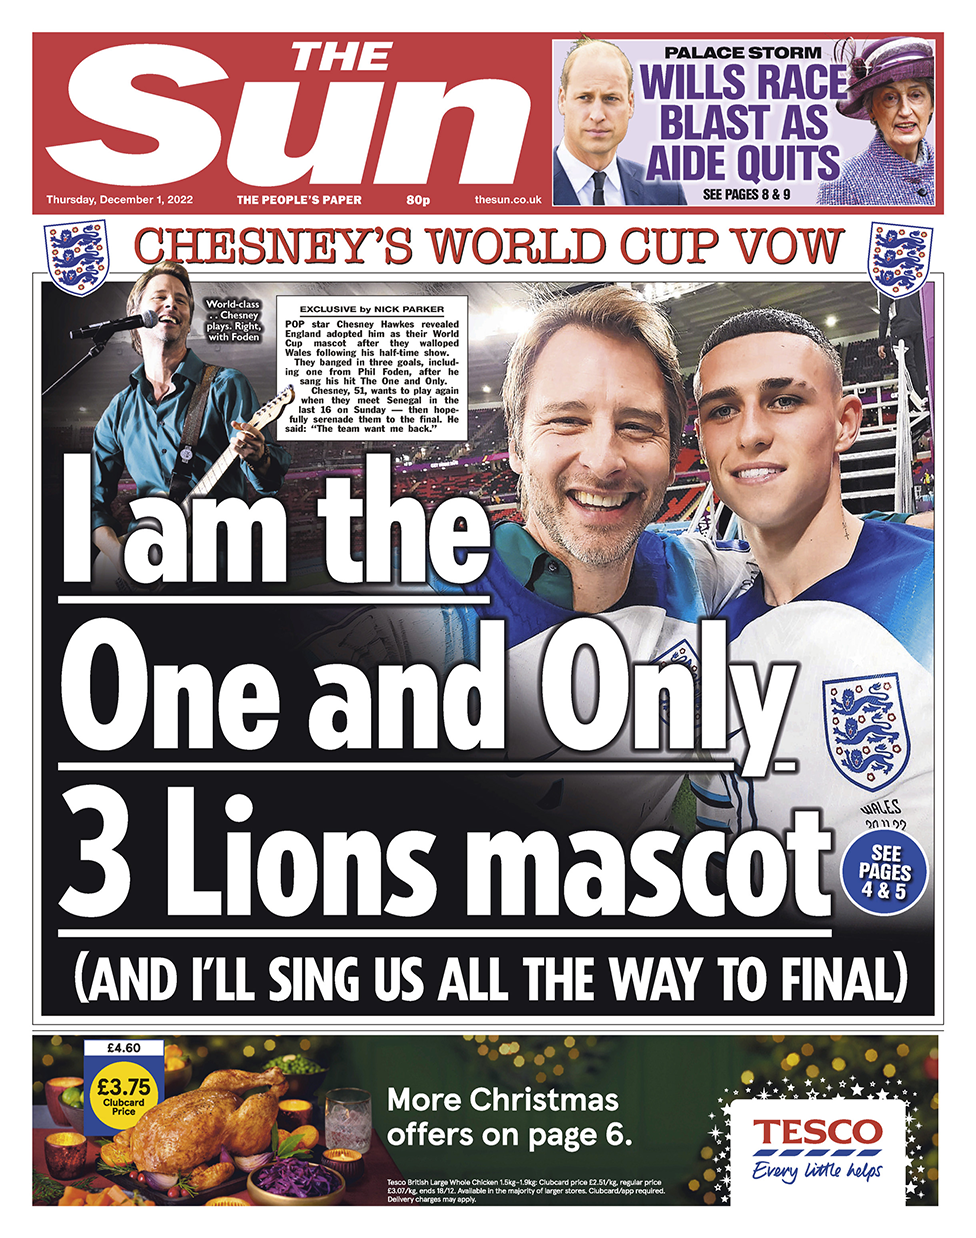 Заголовок на первой странице Sun гласит: «Я тот, кто Только талисман 3 львов